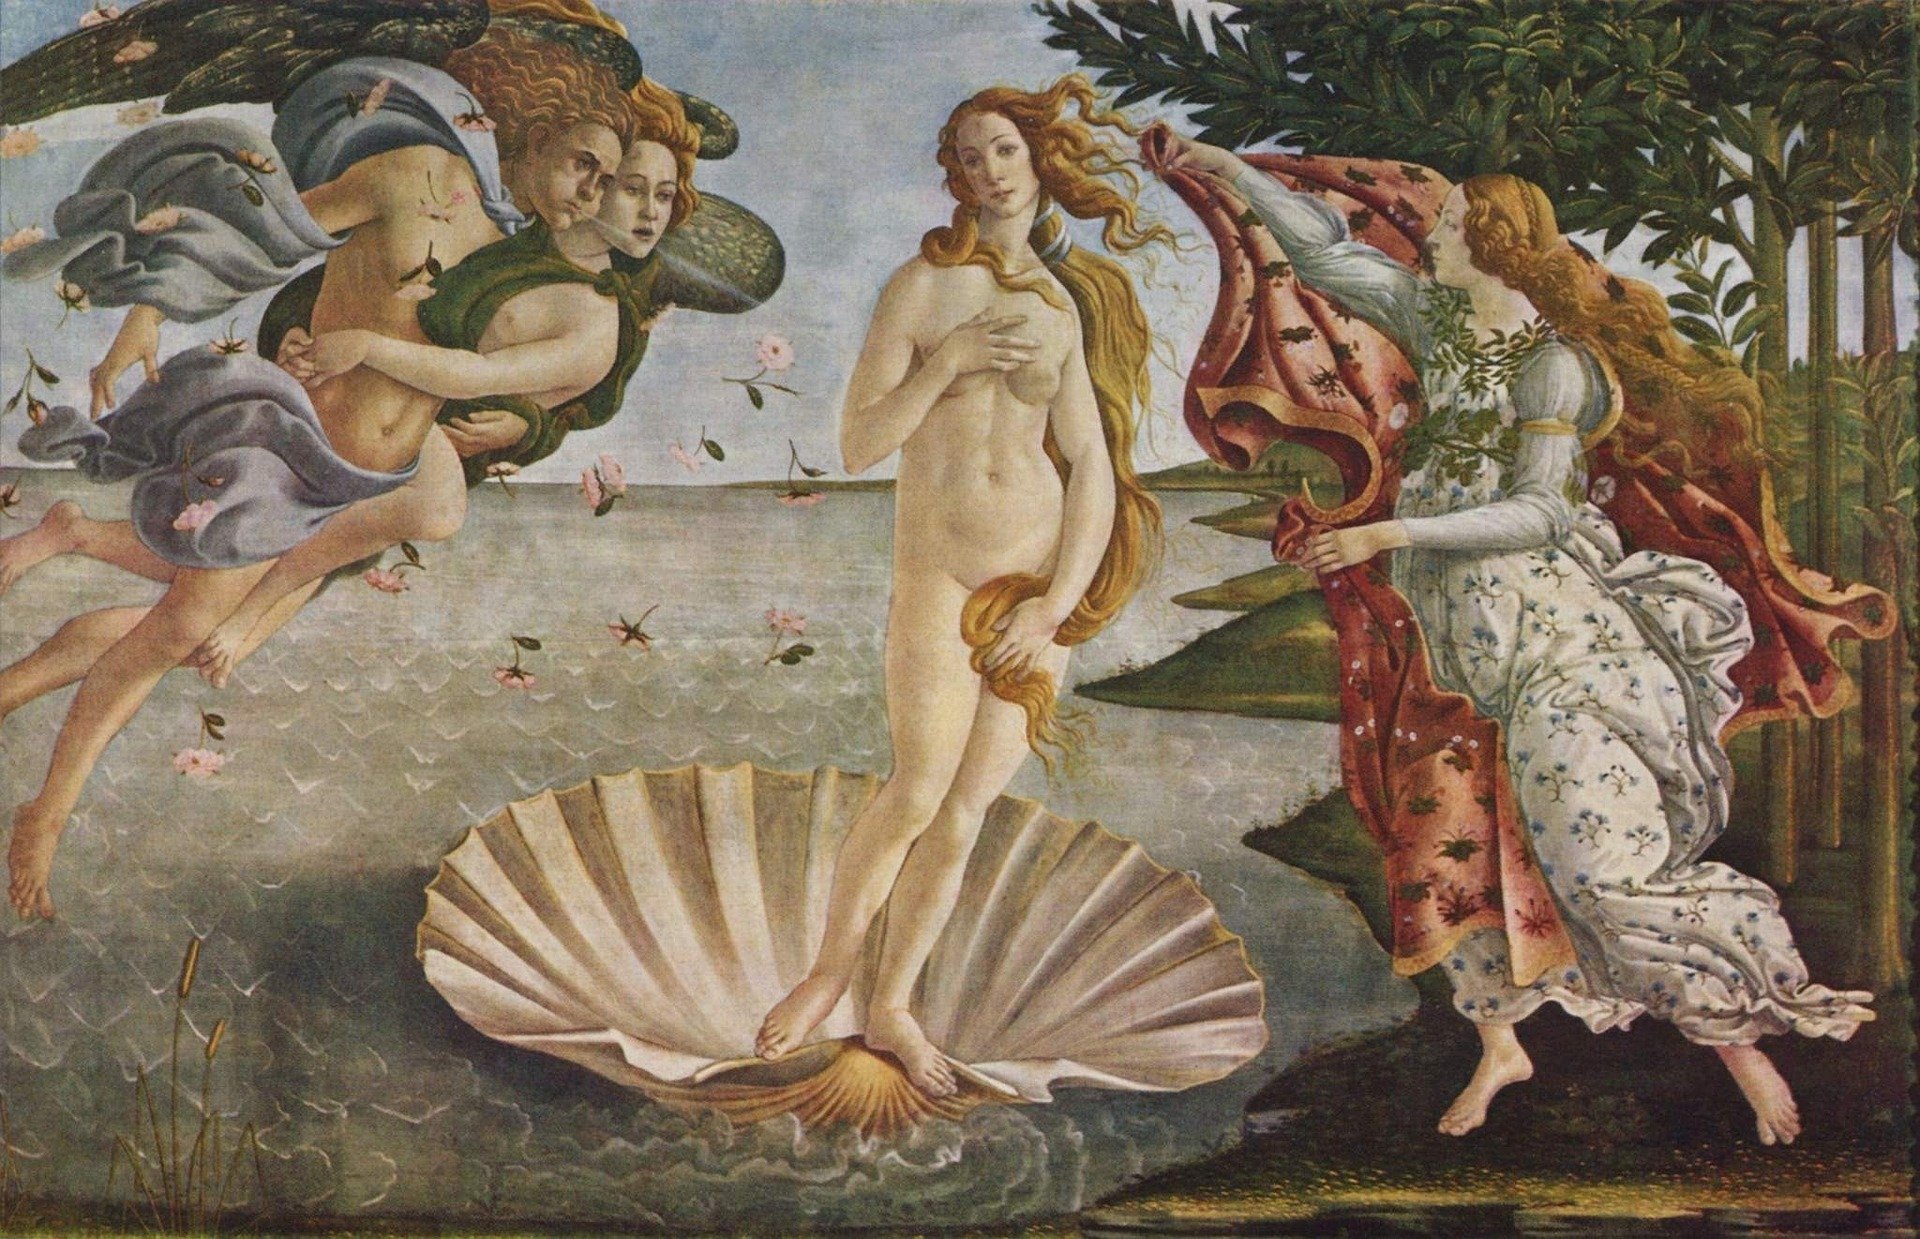 słynne obrazy quiz wiedzy test malarstwo malarze historia sztuki sandro botticelli